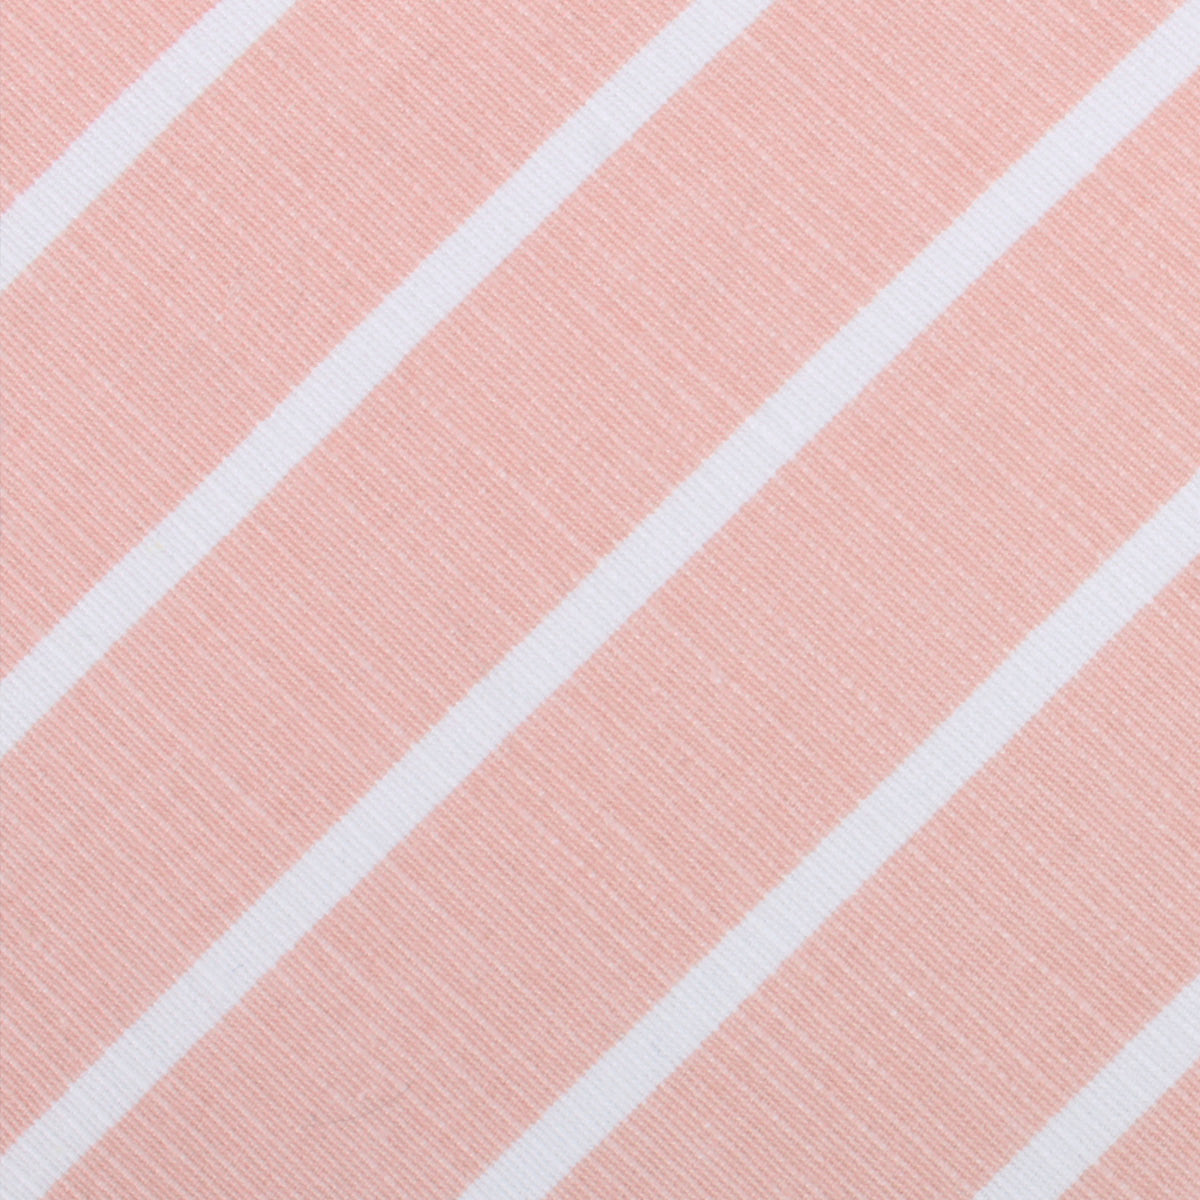 Santorini Pink Blush Striped Linen Necktie Fabric